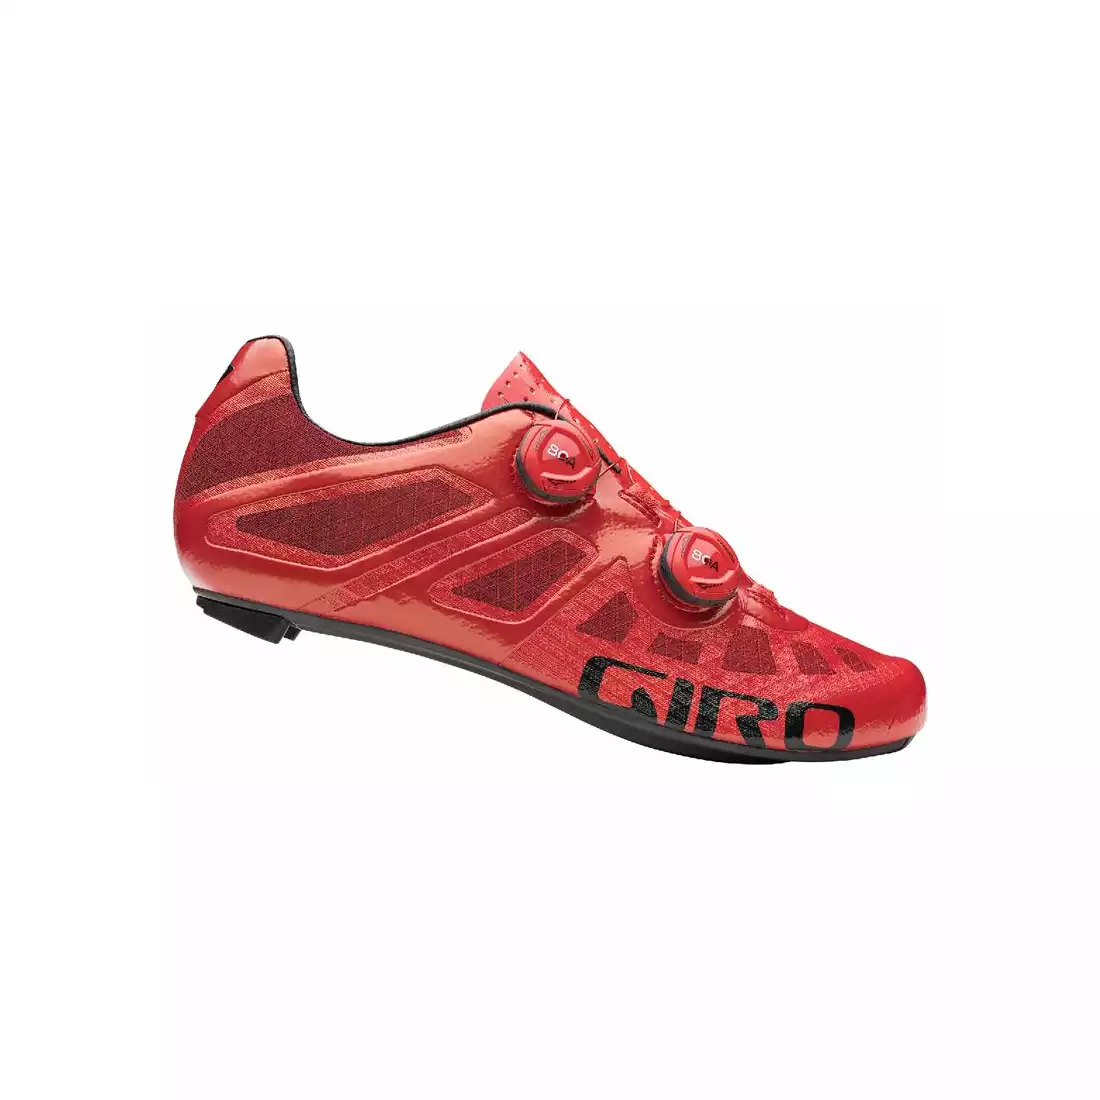 GIRO Męskie buty rowerowe IMPERIAL, bright red 